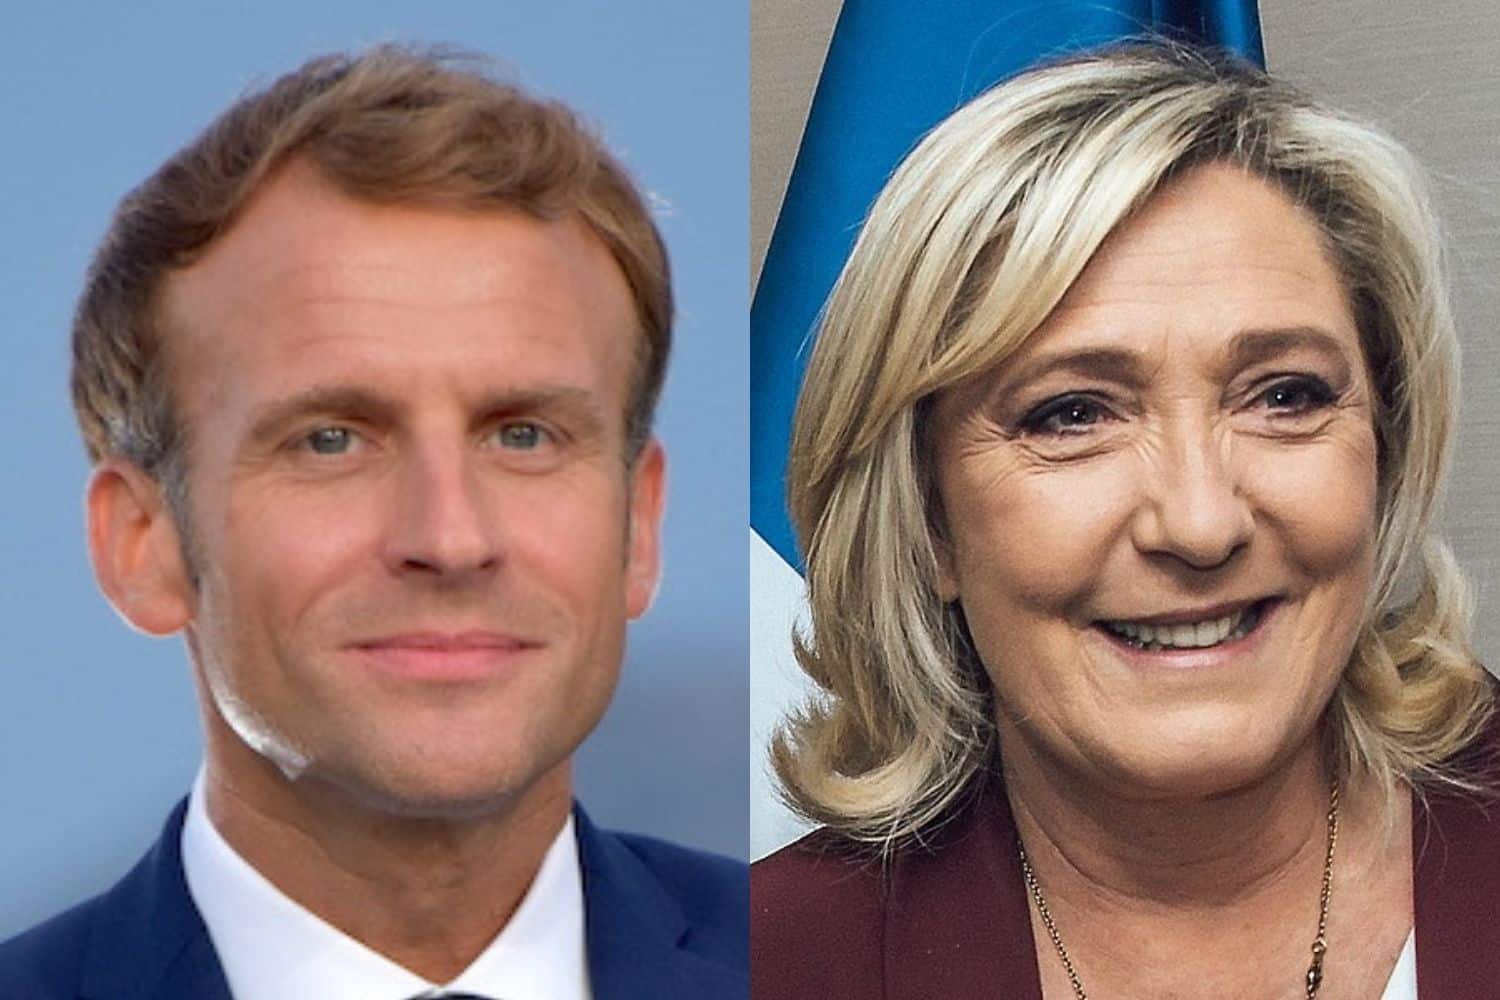 Emmanuel Macron, Qu&rsquo;ont prévu Emmanuel Macron et Marine Le Pen en cas de victoire ?, Made in Marseille